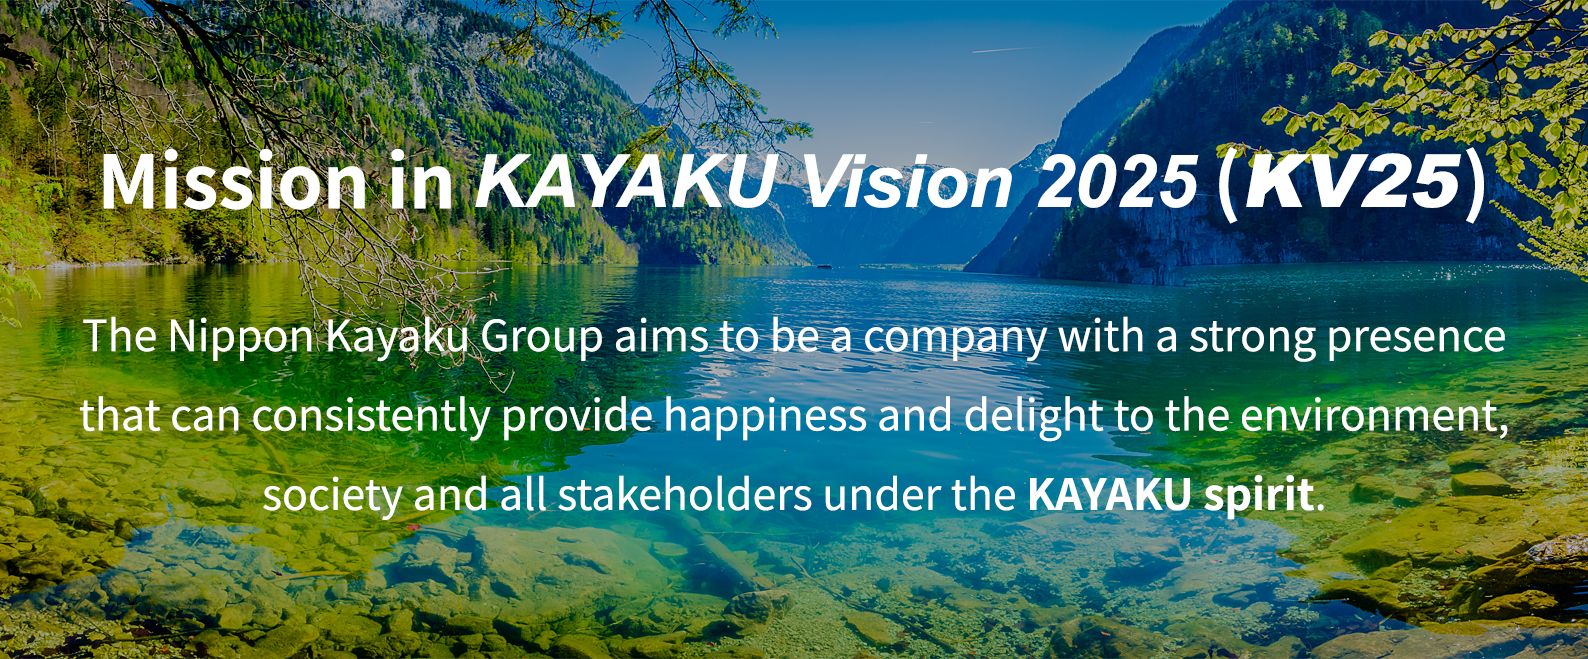 KAYAKU Vision 2025: Vision for 2025